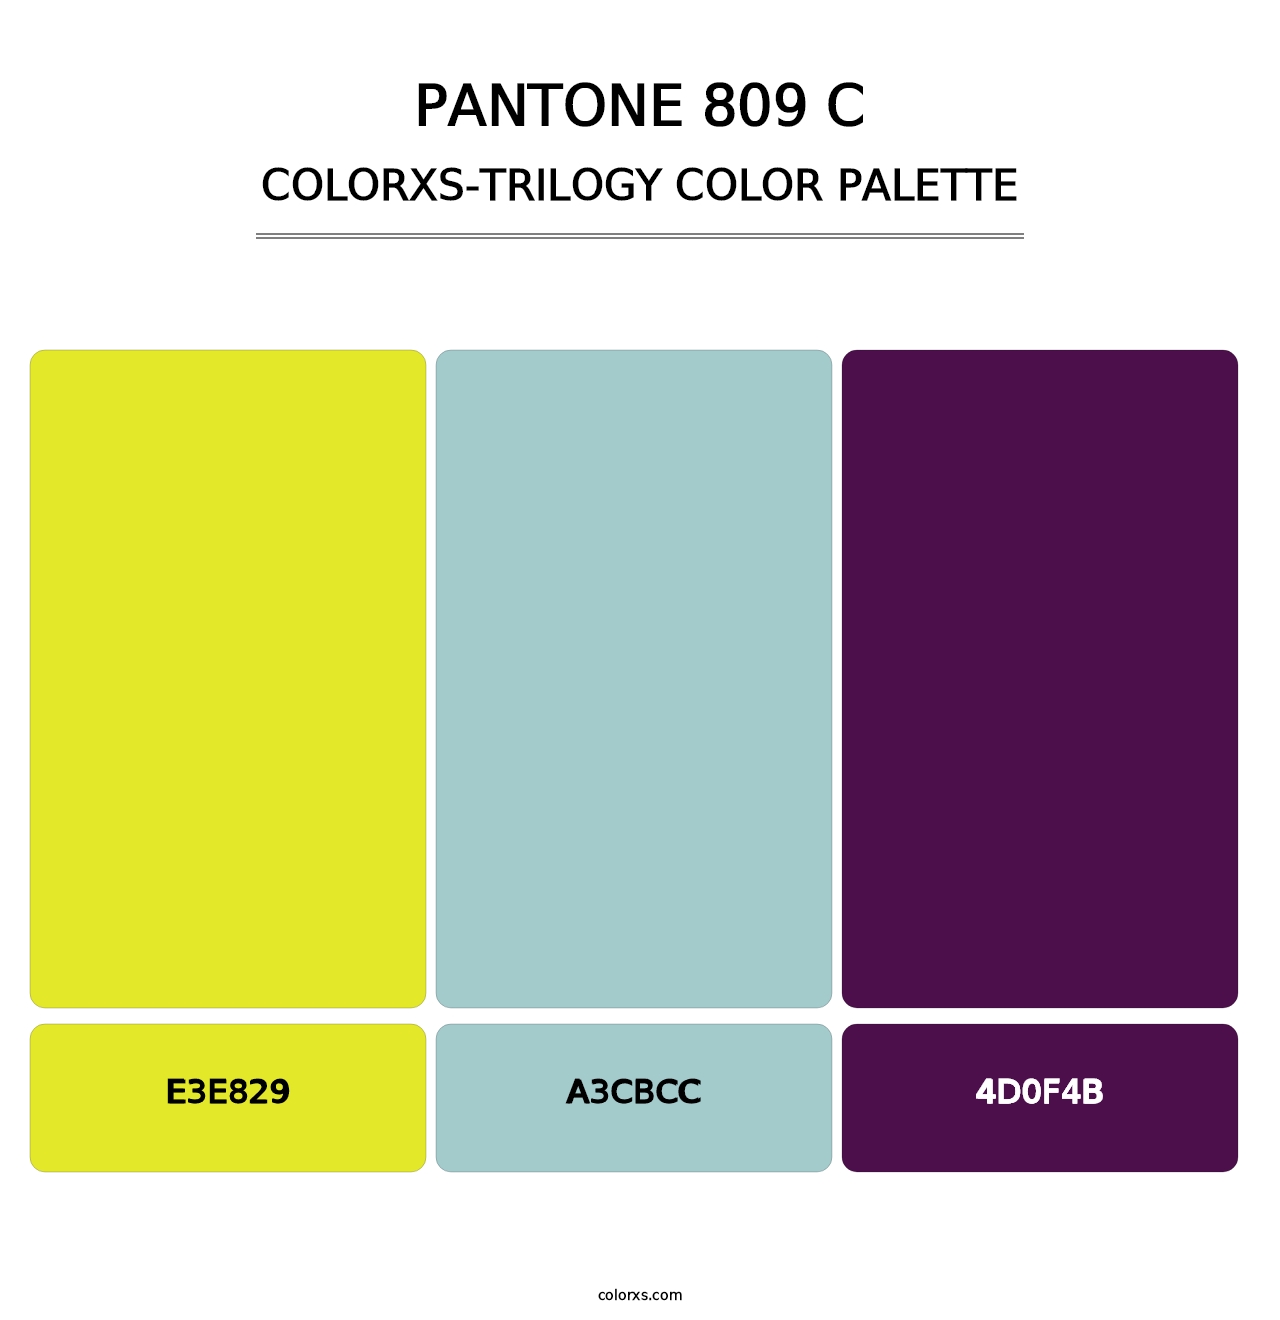 PANTONE 809 C - Colorxs Trilogy Palette